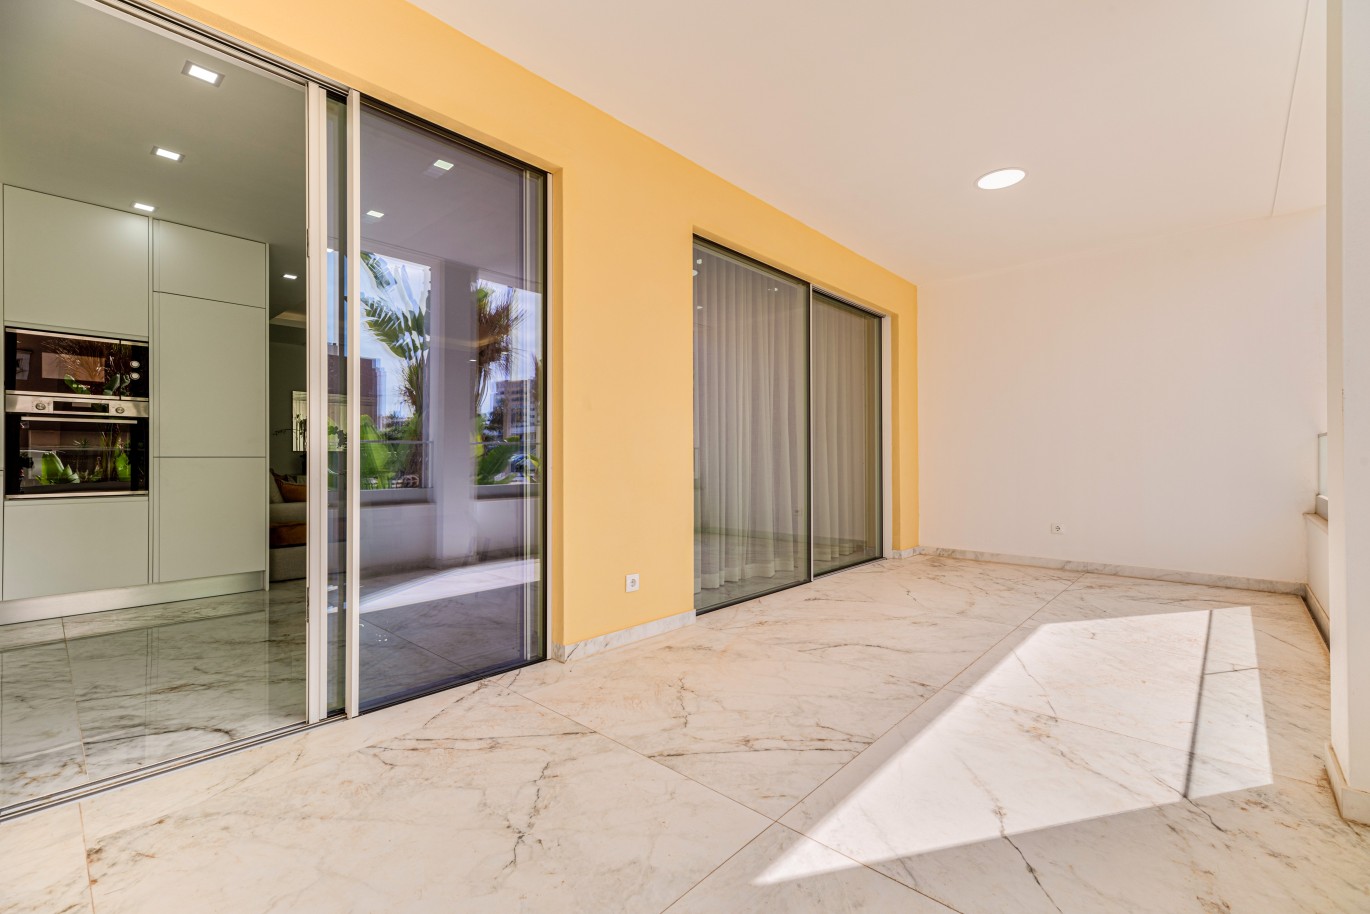 Apartamento, com terraço, para venda, em Lagos, Algarve_238102